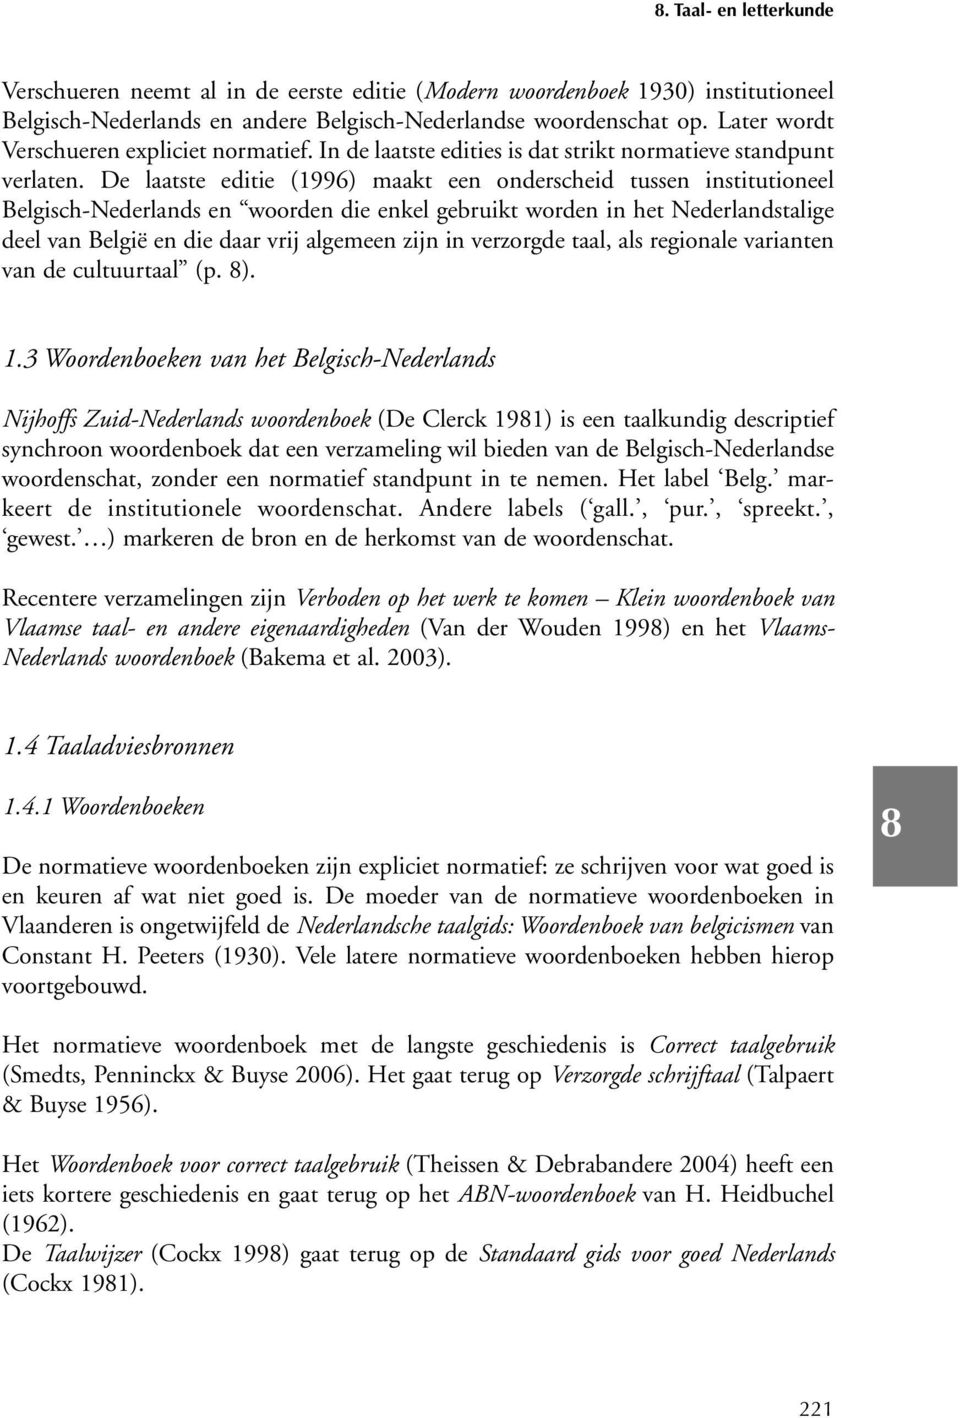 De laatste editie (1996) maakt een onderscheid tussen institutioneel Belgisch-Nederlands en woorden die enkel gebruikt worden in het Nederlandstalige deel van België en die daar vrij algemeen zijn in